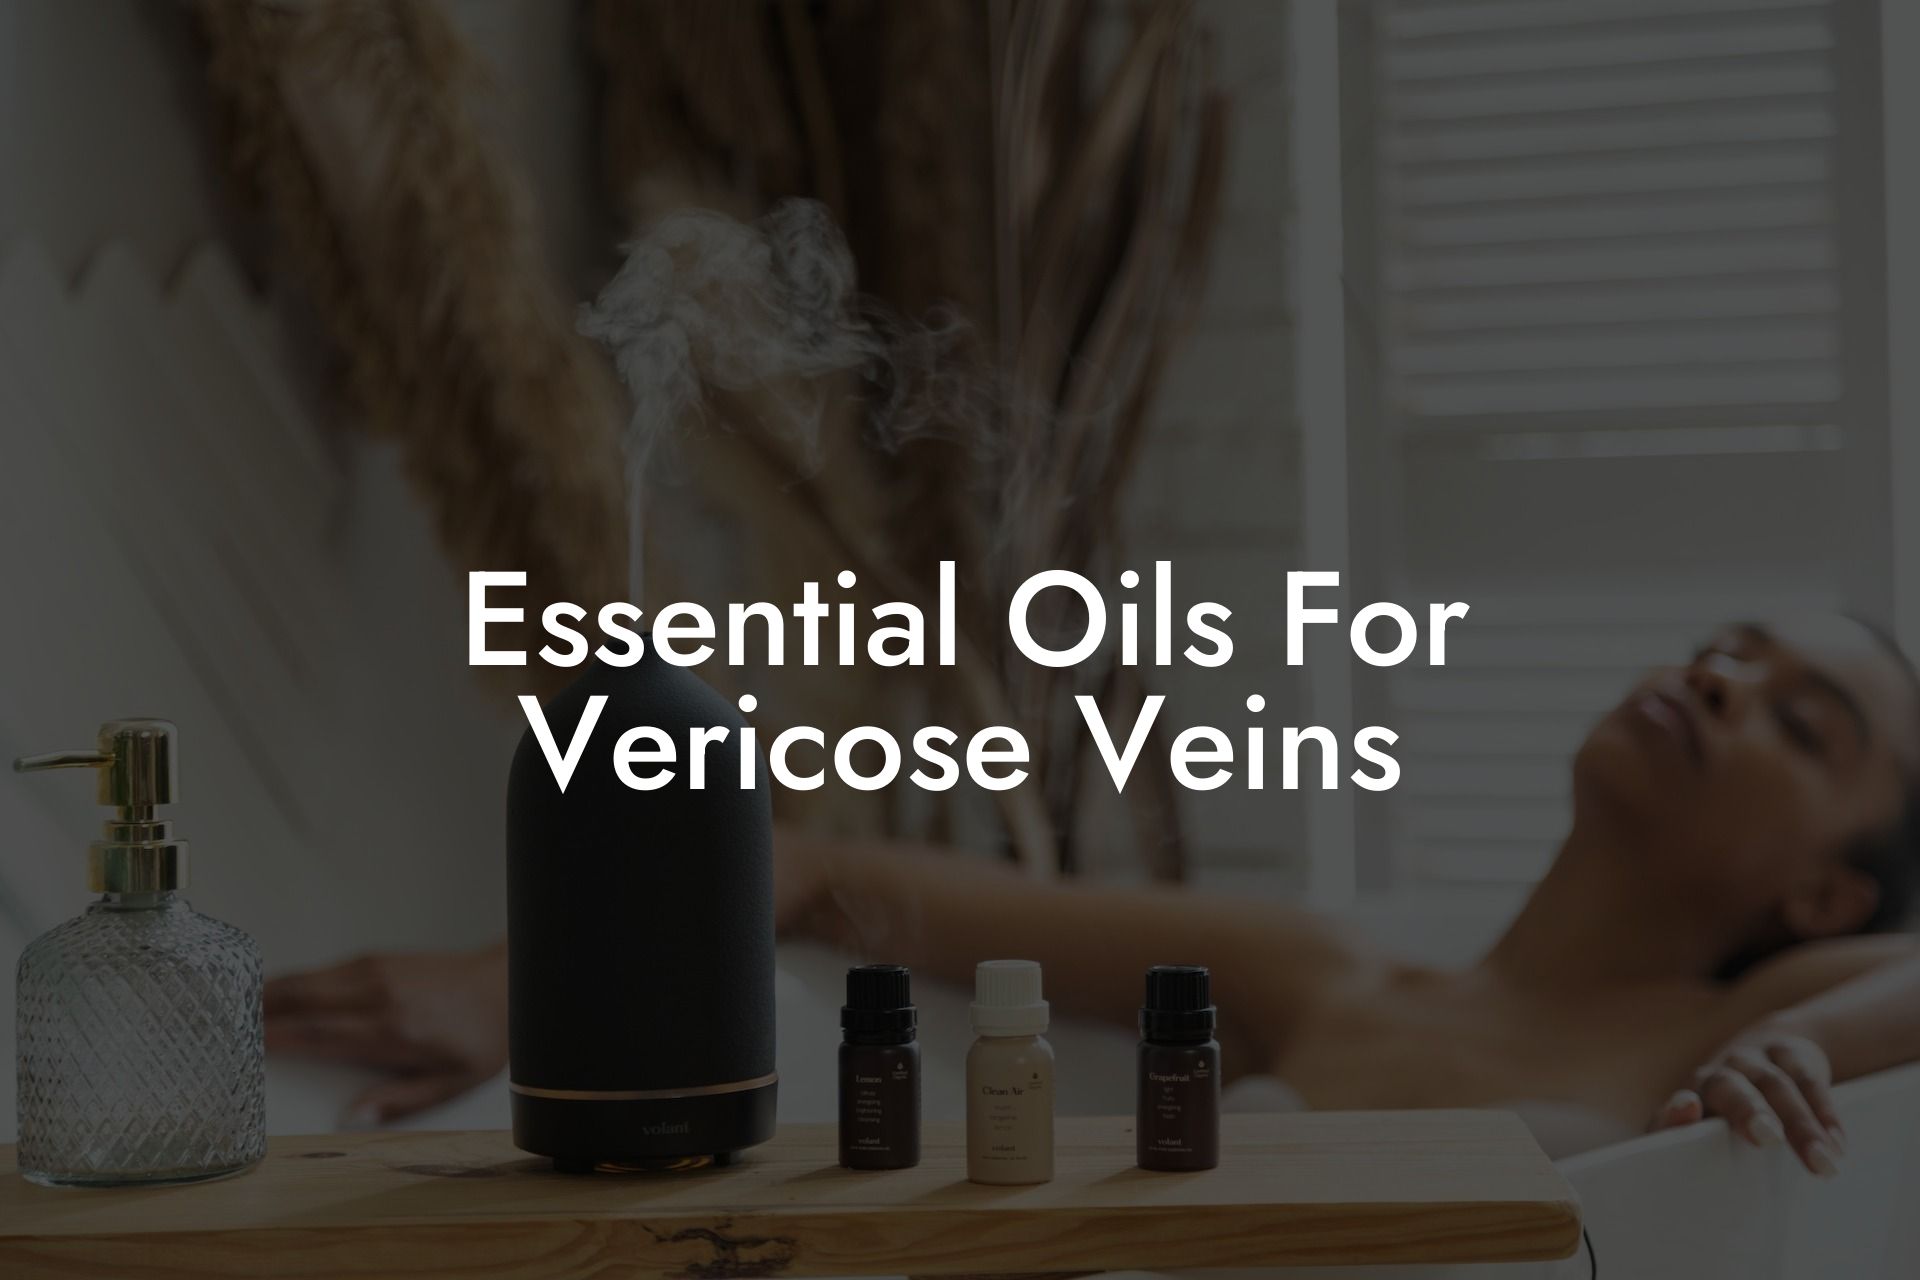 Essential Oils For Vericose Veins